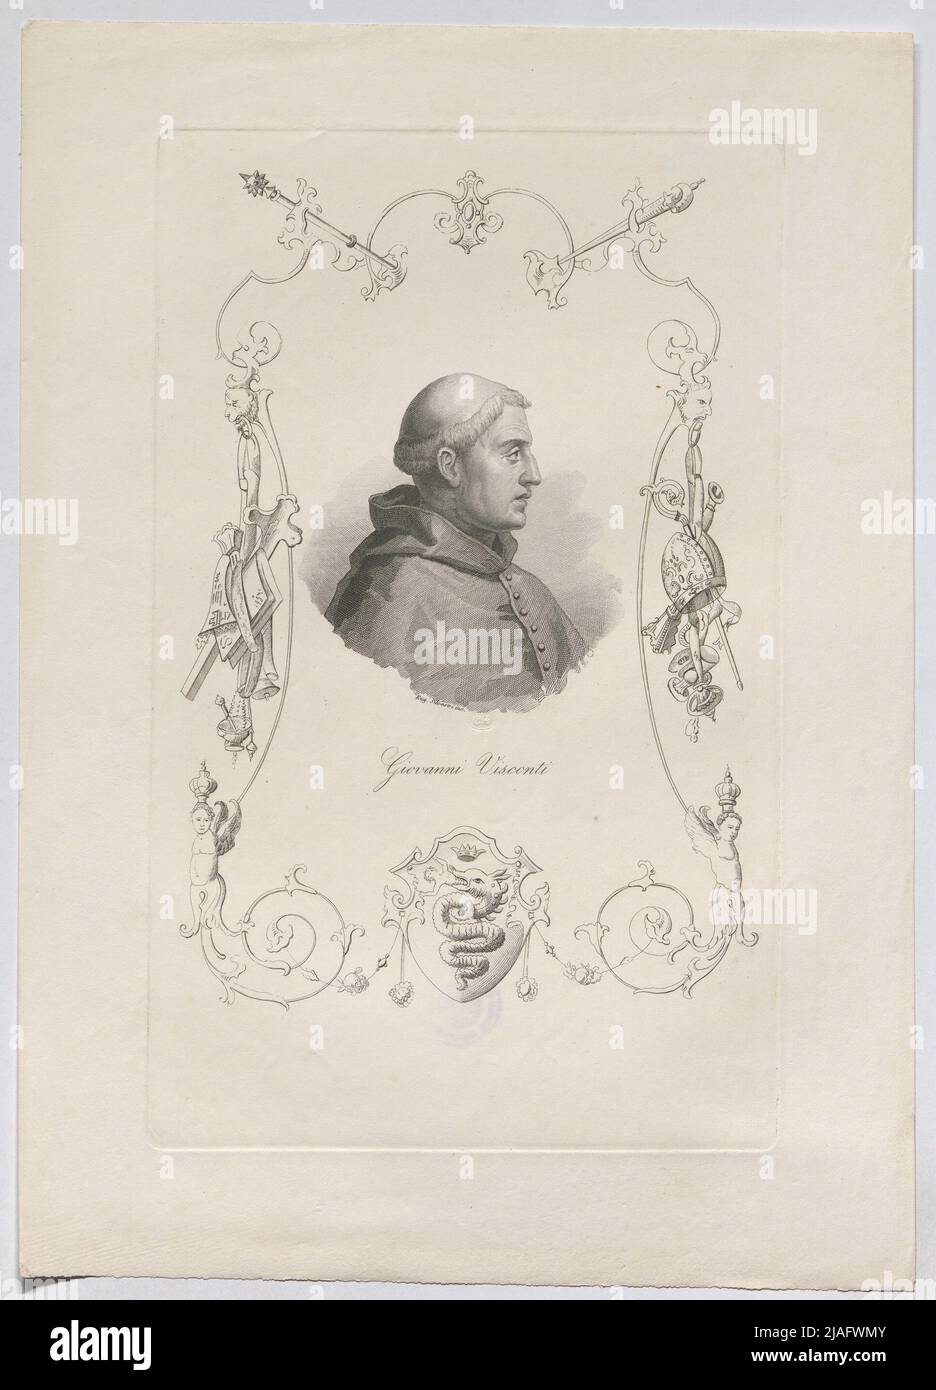 Giovanni Visconti '. Giovanni Visconti, Erzbischof von Mailand. Eugen Silvestri, artista Foto Stock